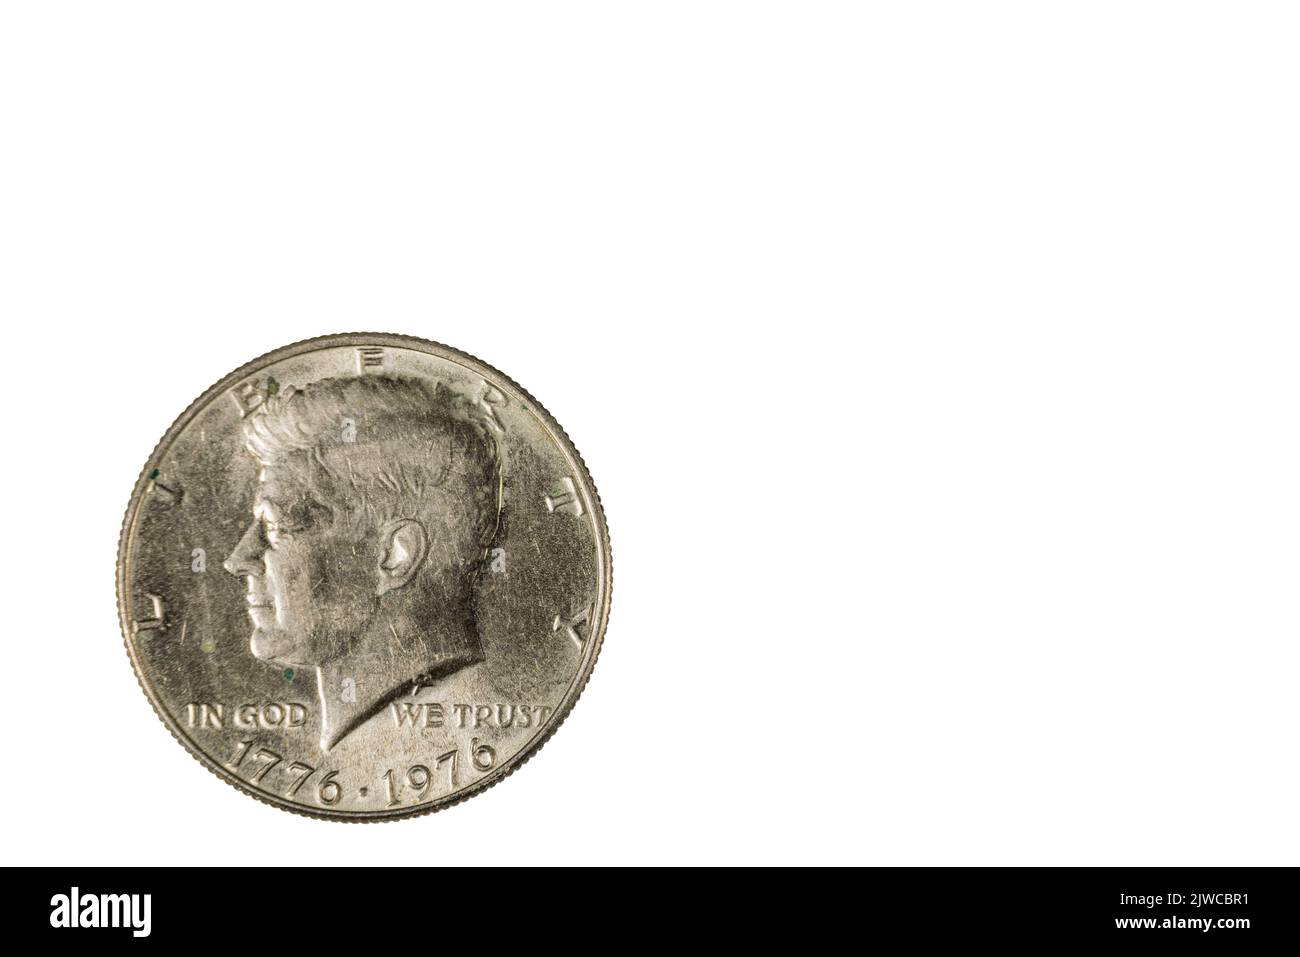 Vue rapprochée de l'avant de la pièce de la moitié du dollar américain datée du 1776-1976. Concept numismatique. Banque D'Images